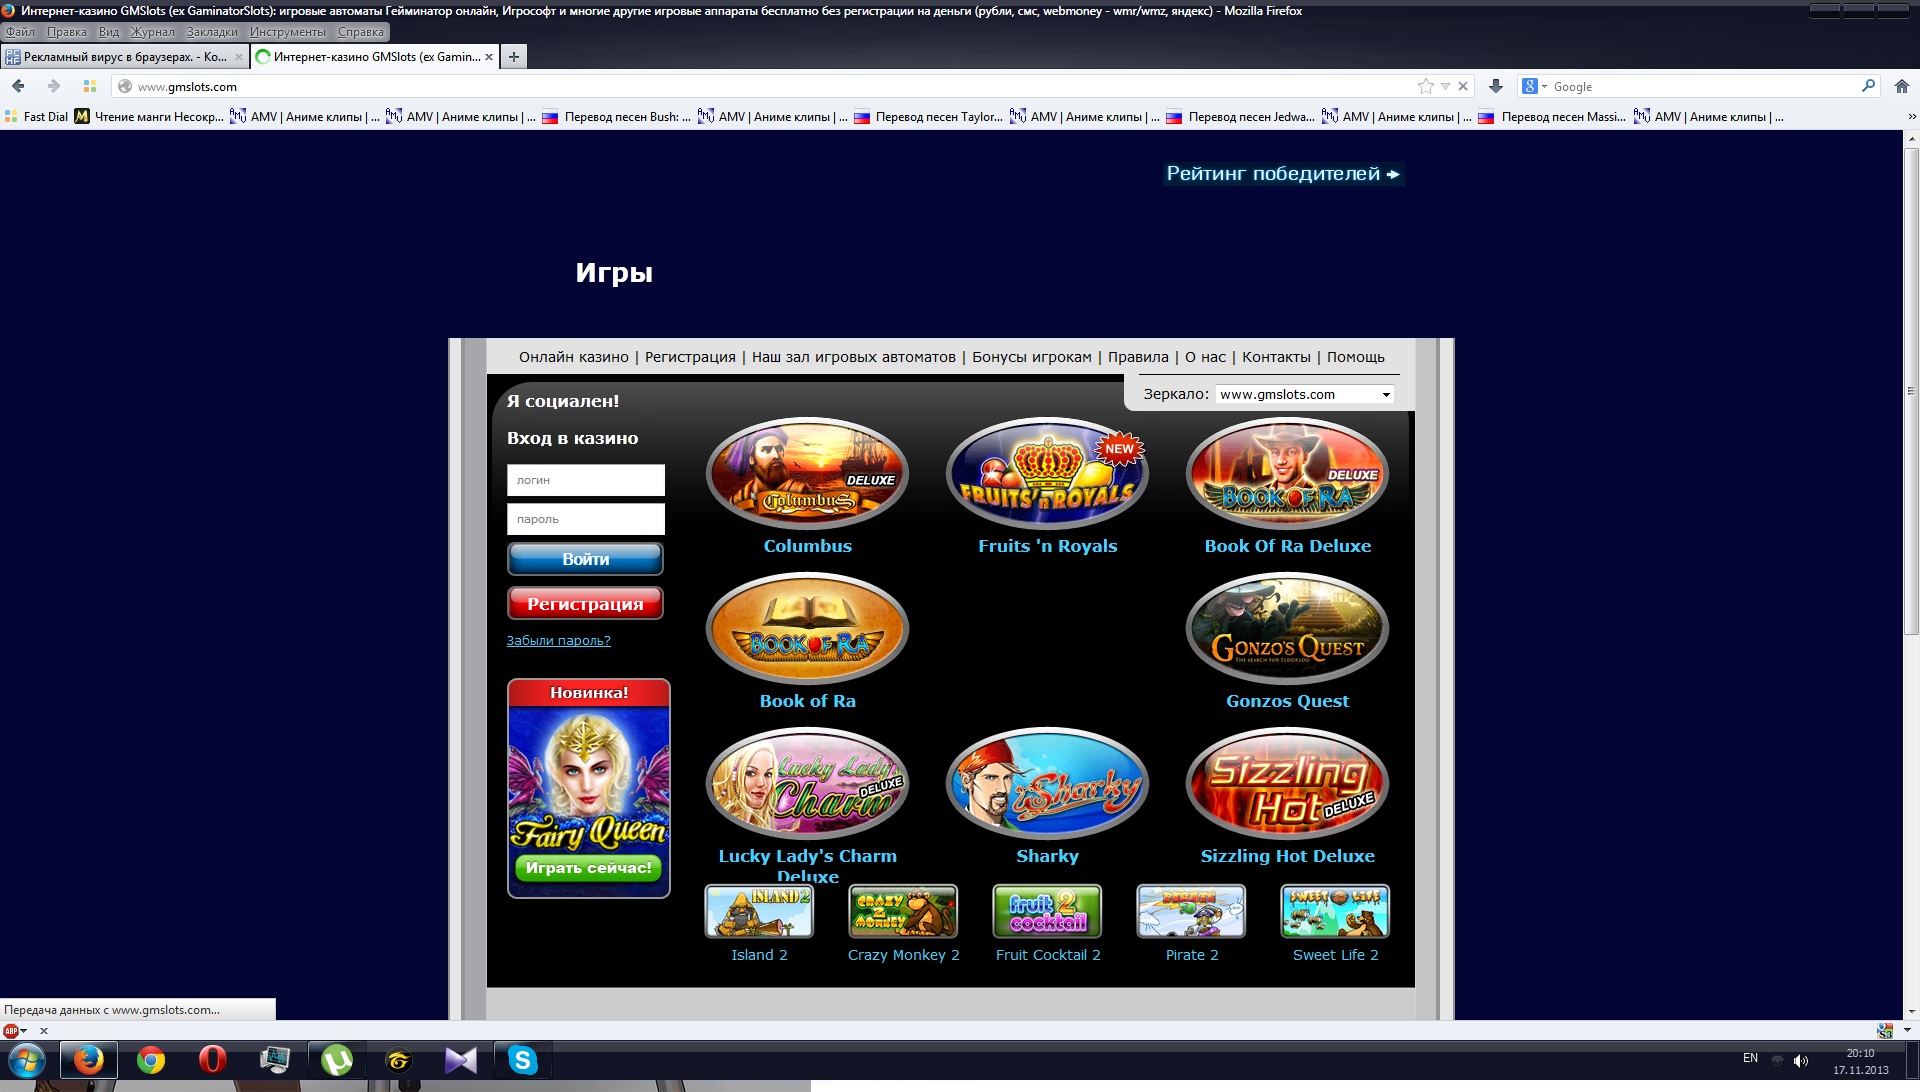 Игровые автоматы Игрософт. Интернет казино Игрософт. Интернет казино с софтом Igrosoft. Videoplayback (3) - копия - копия (4) - копия (2).